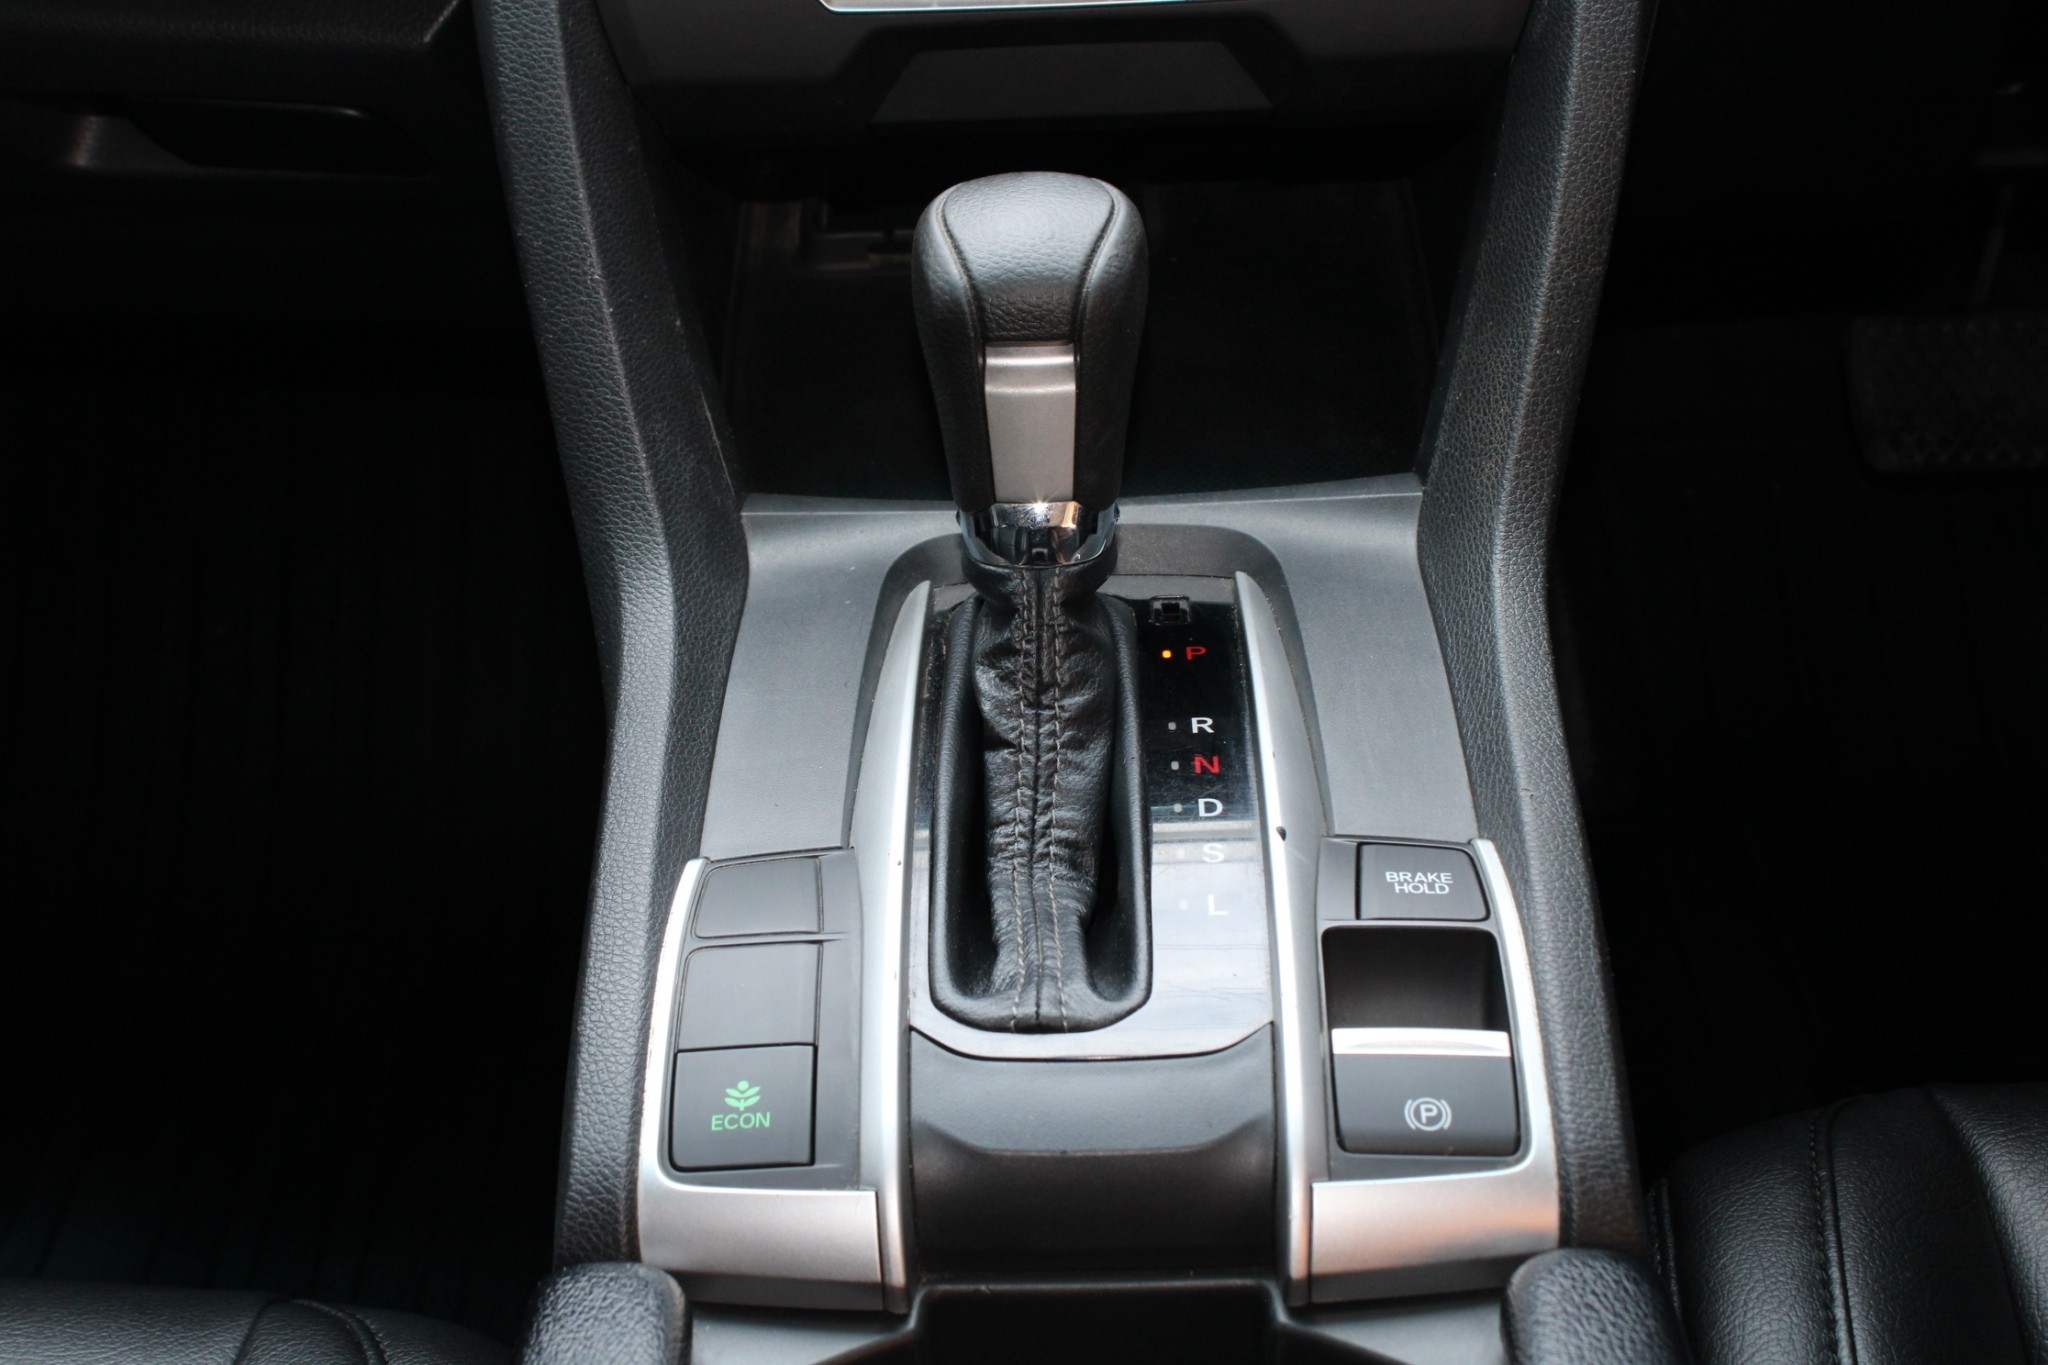 2016 Honda Civic FC 1.8 E i-VTEC AT สีขาว มือเดียวออกห้าง ไม่มีอุบัติเหตุ มีประวัติเข้าศูนย์ ขับดีมาก